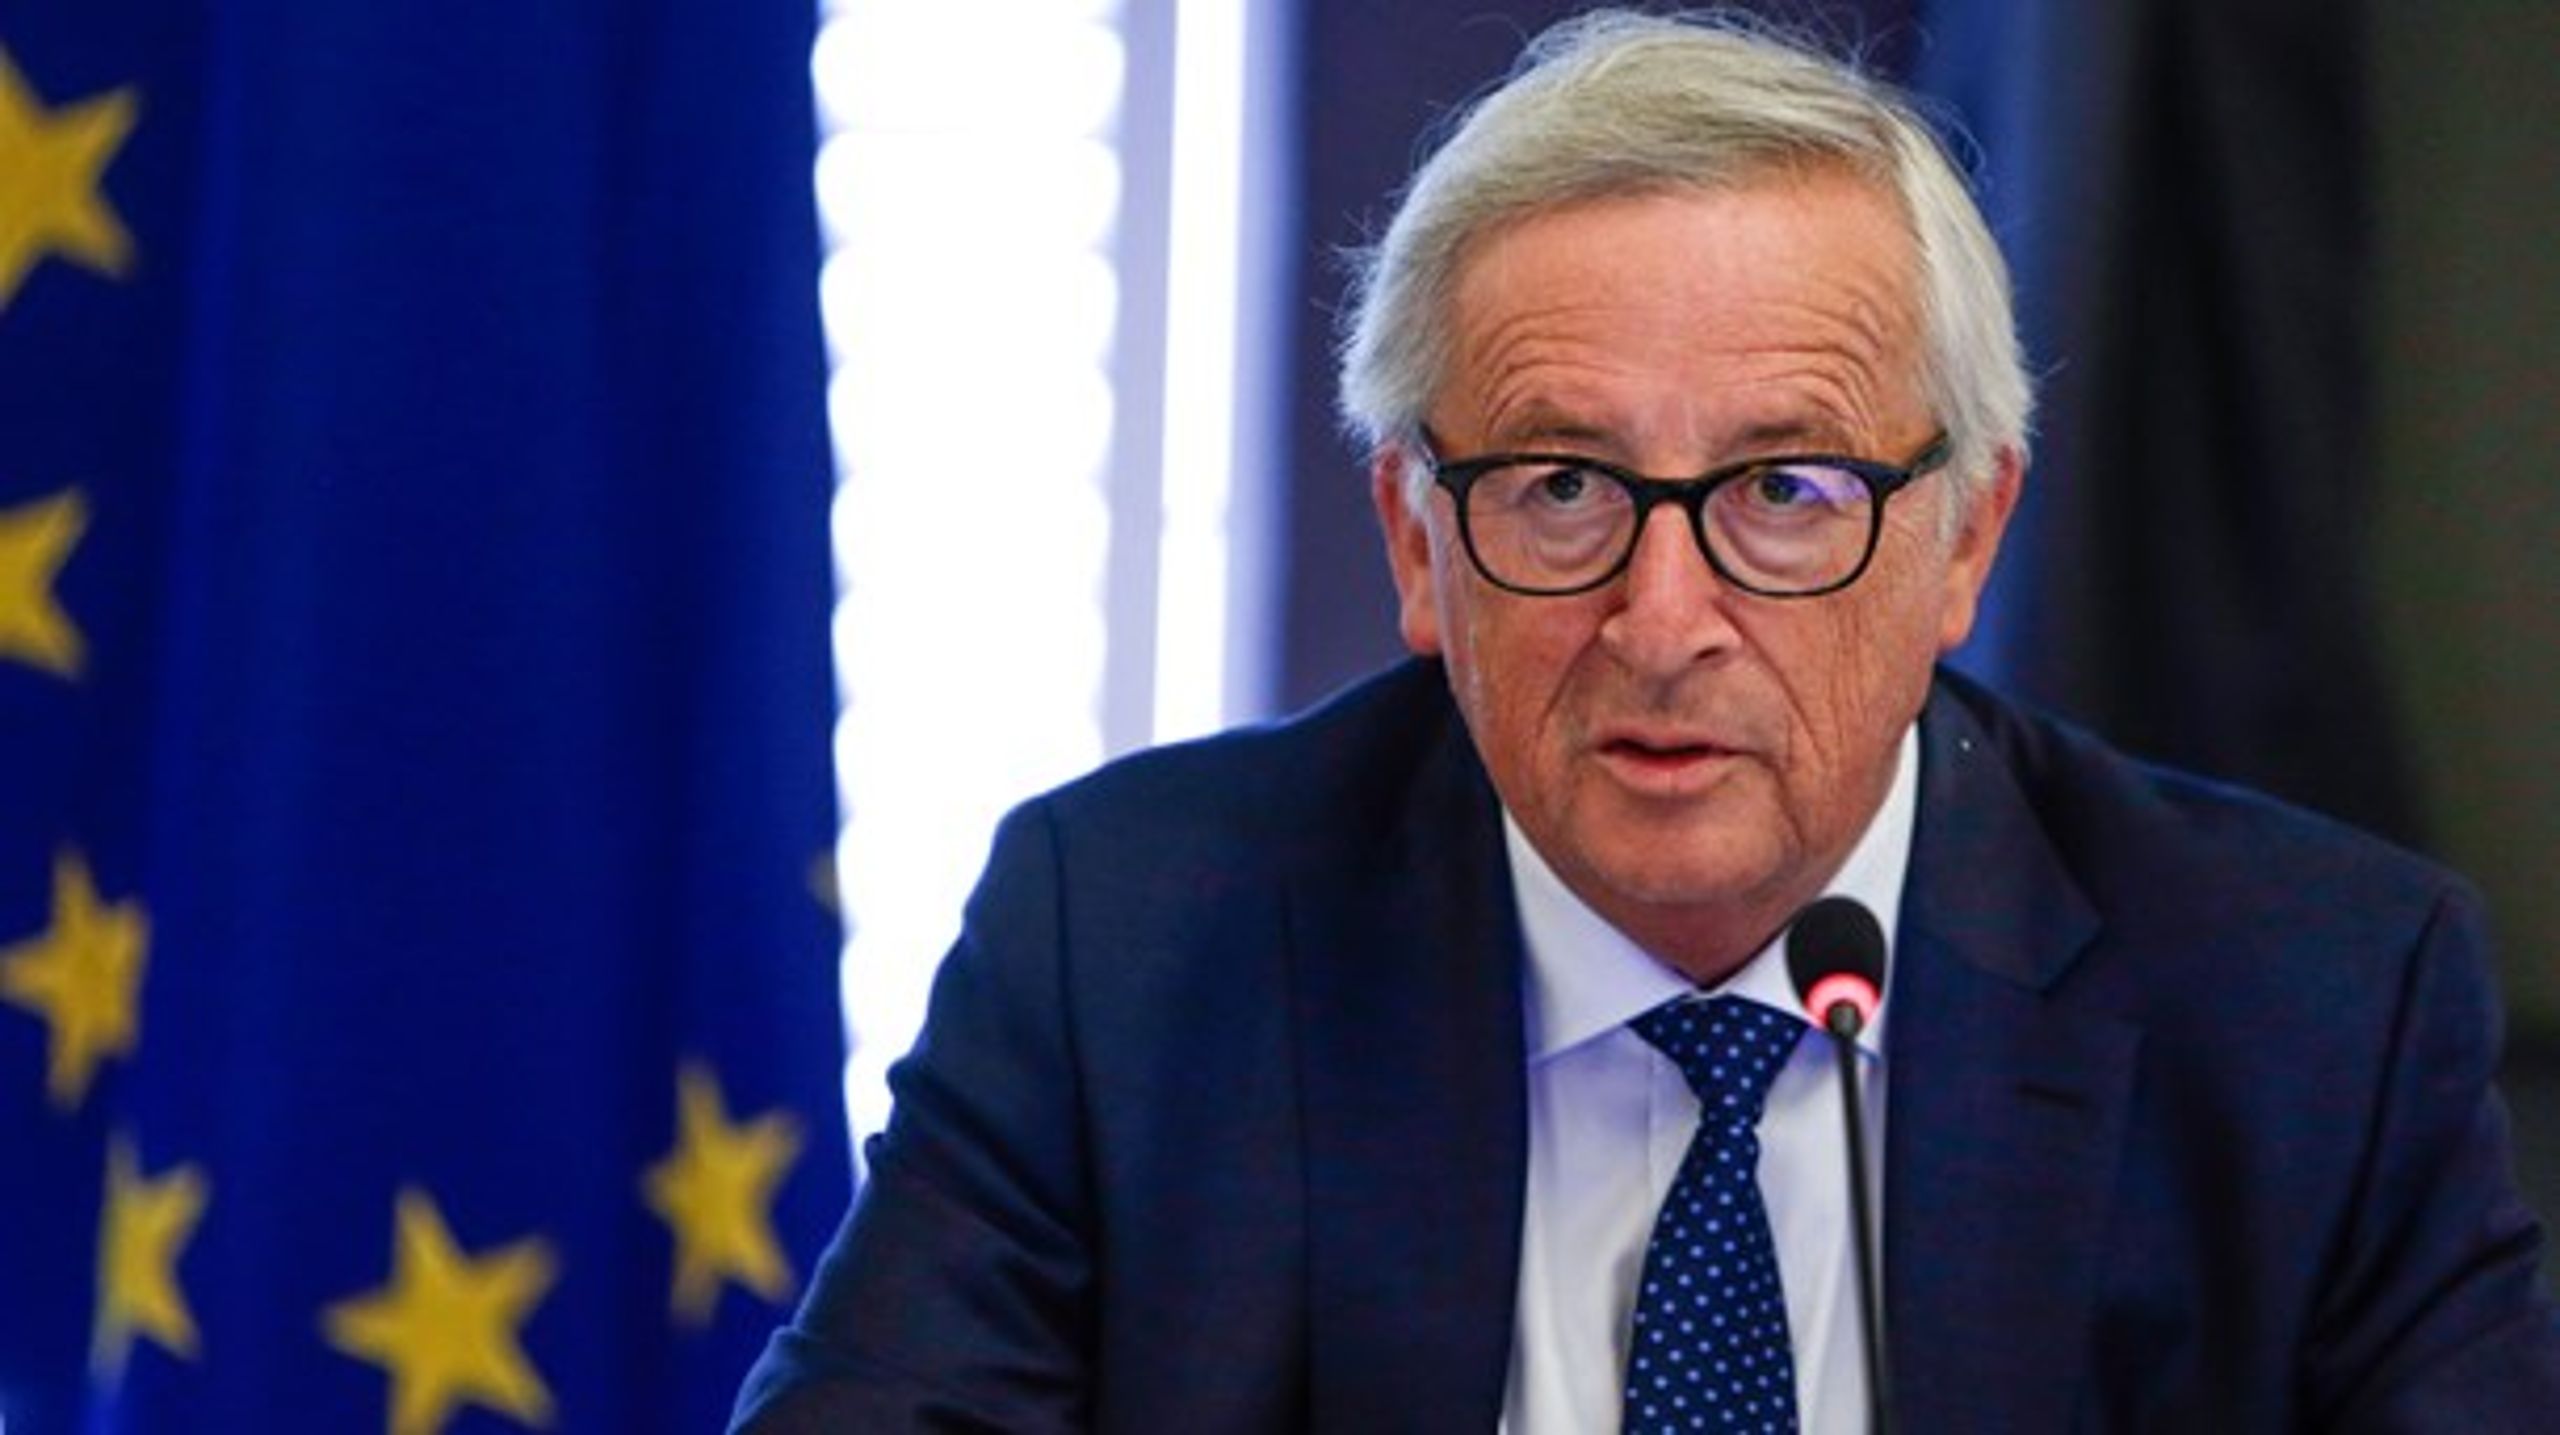 Vi må lytte til borgerne, mener kommissionsformand Jean-Claude Juncker, som har fået 4,6 millioner input til debatten om, hvorvidt man skal sløjfe vintertid og sommertid.